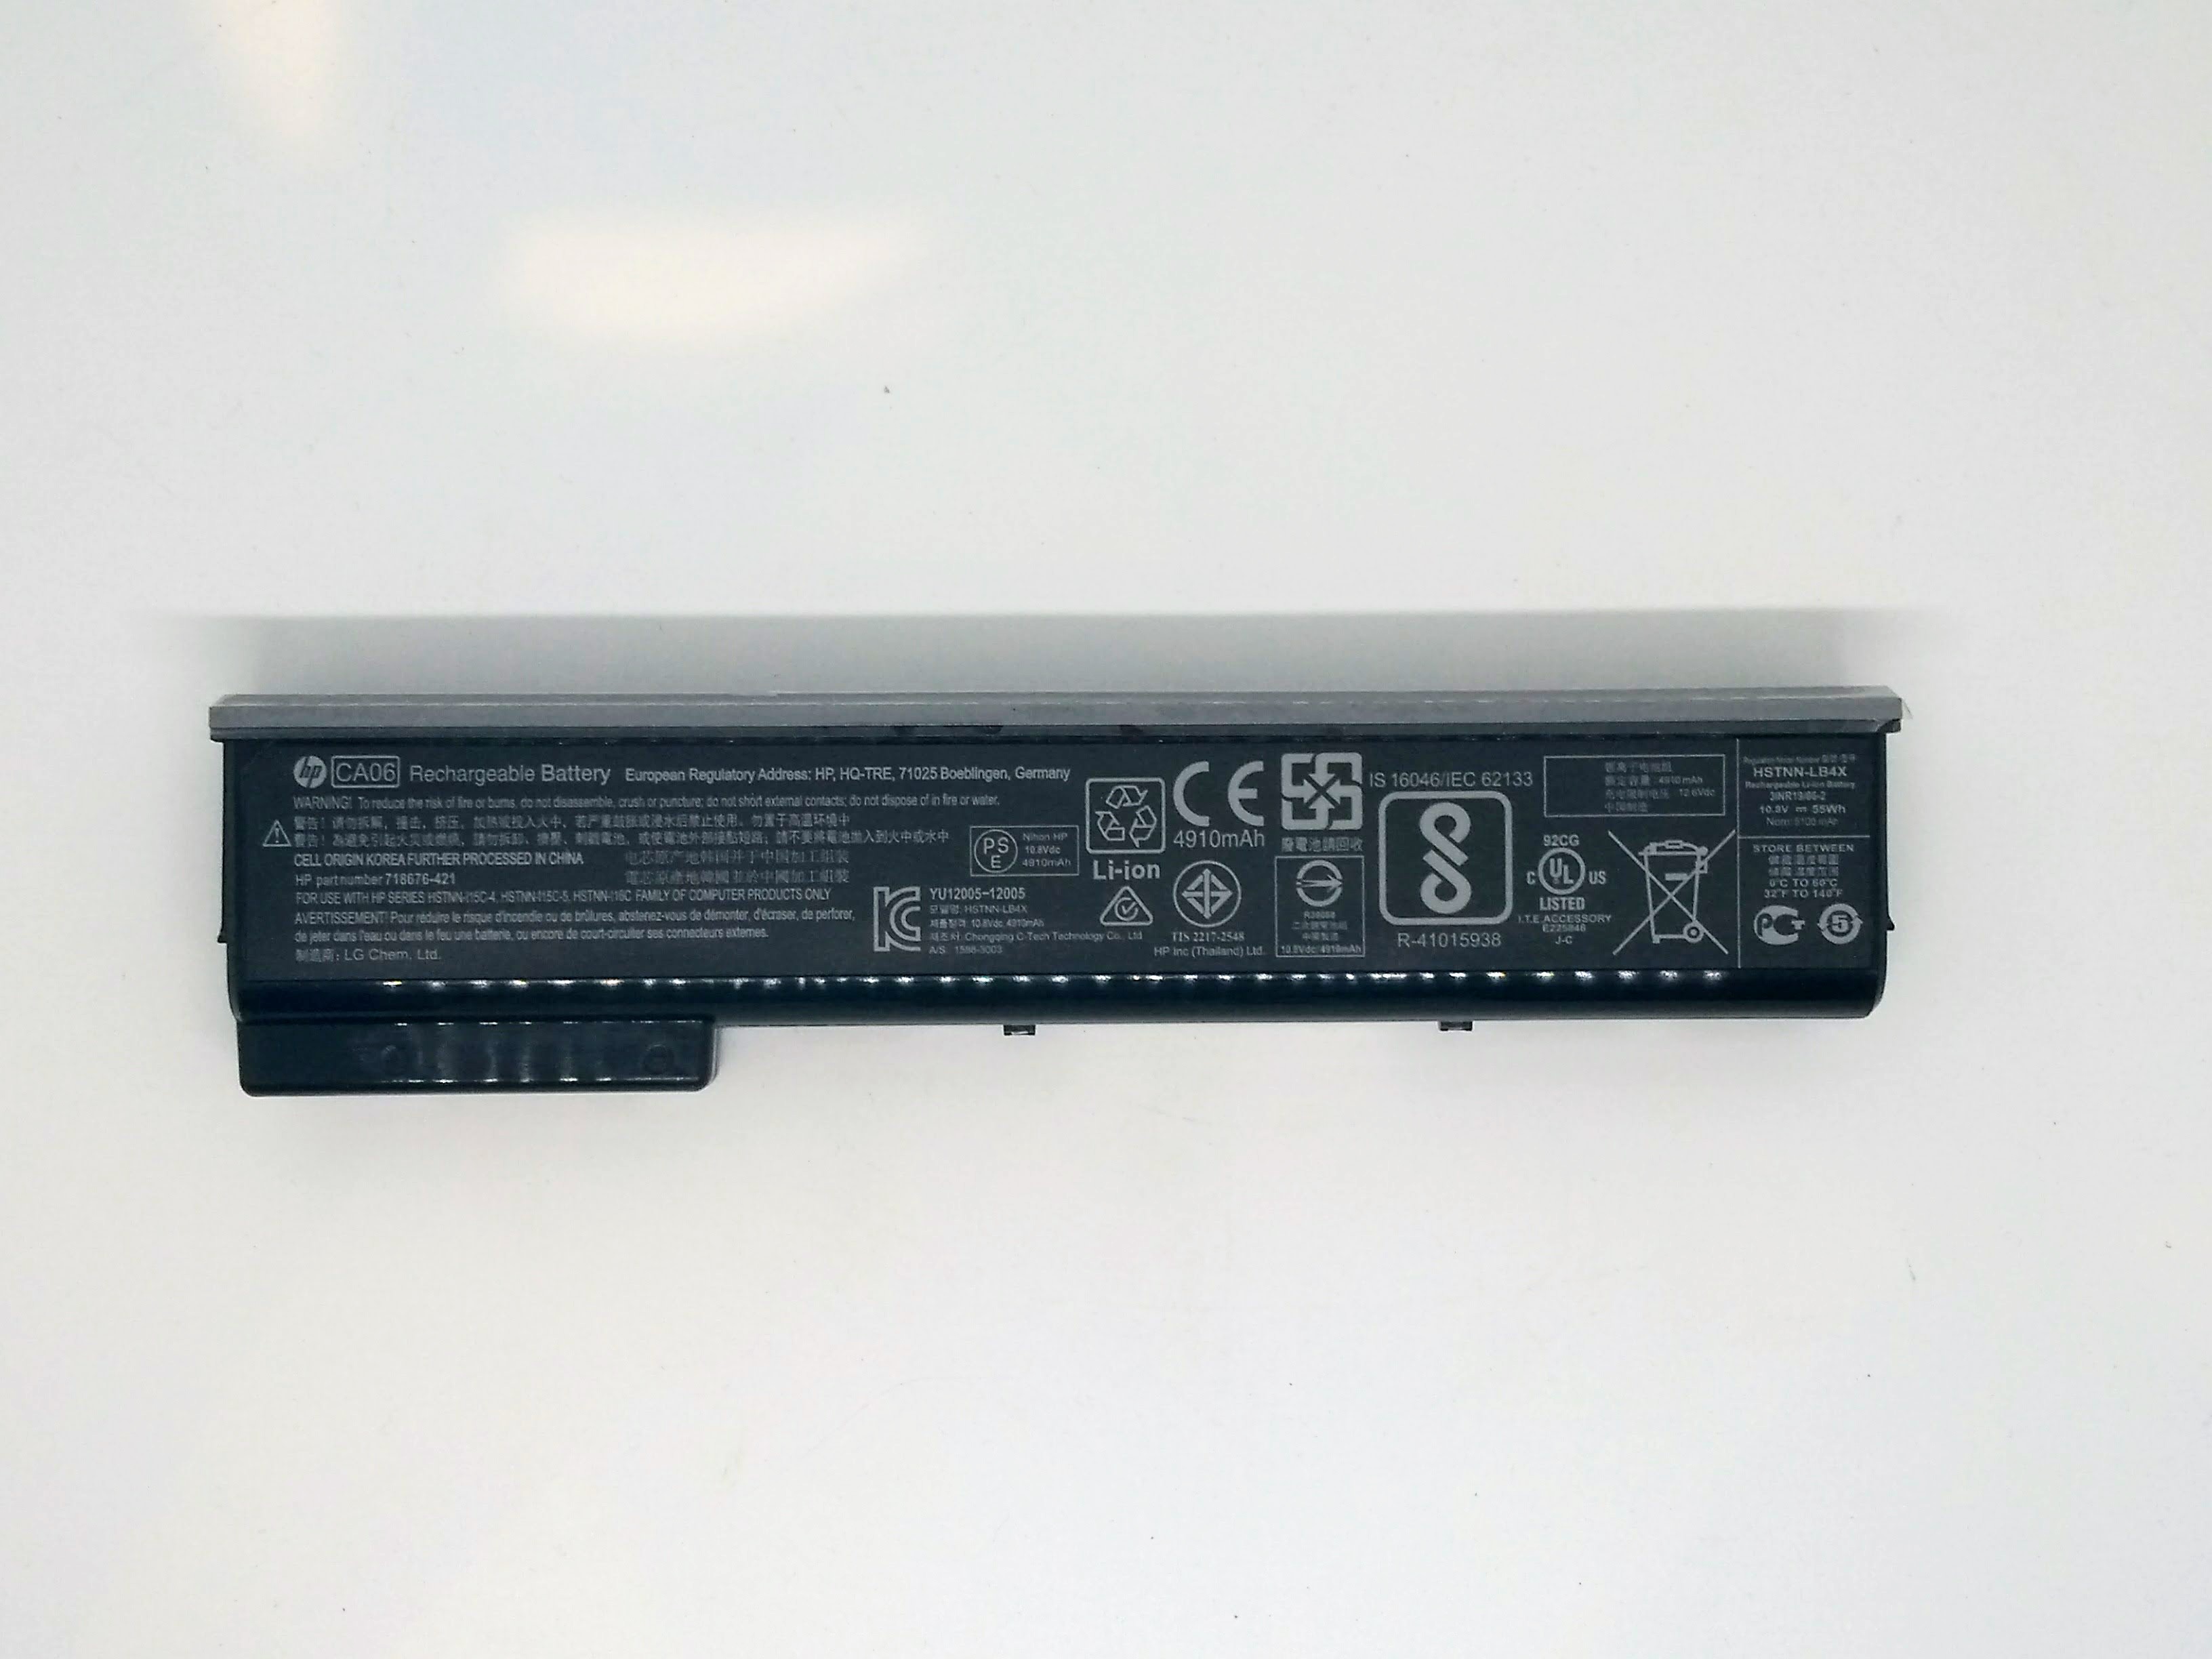 HP ProBook 645 G1 Laptop (P5G18US) Battery 718755-001